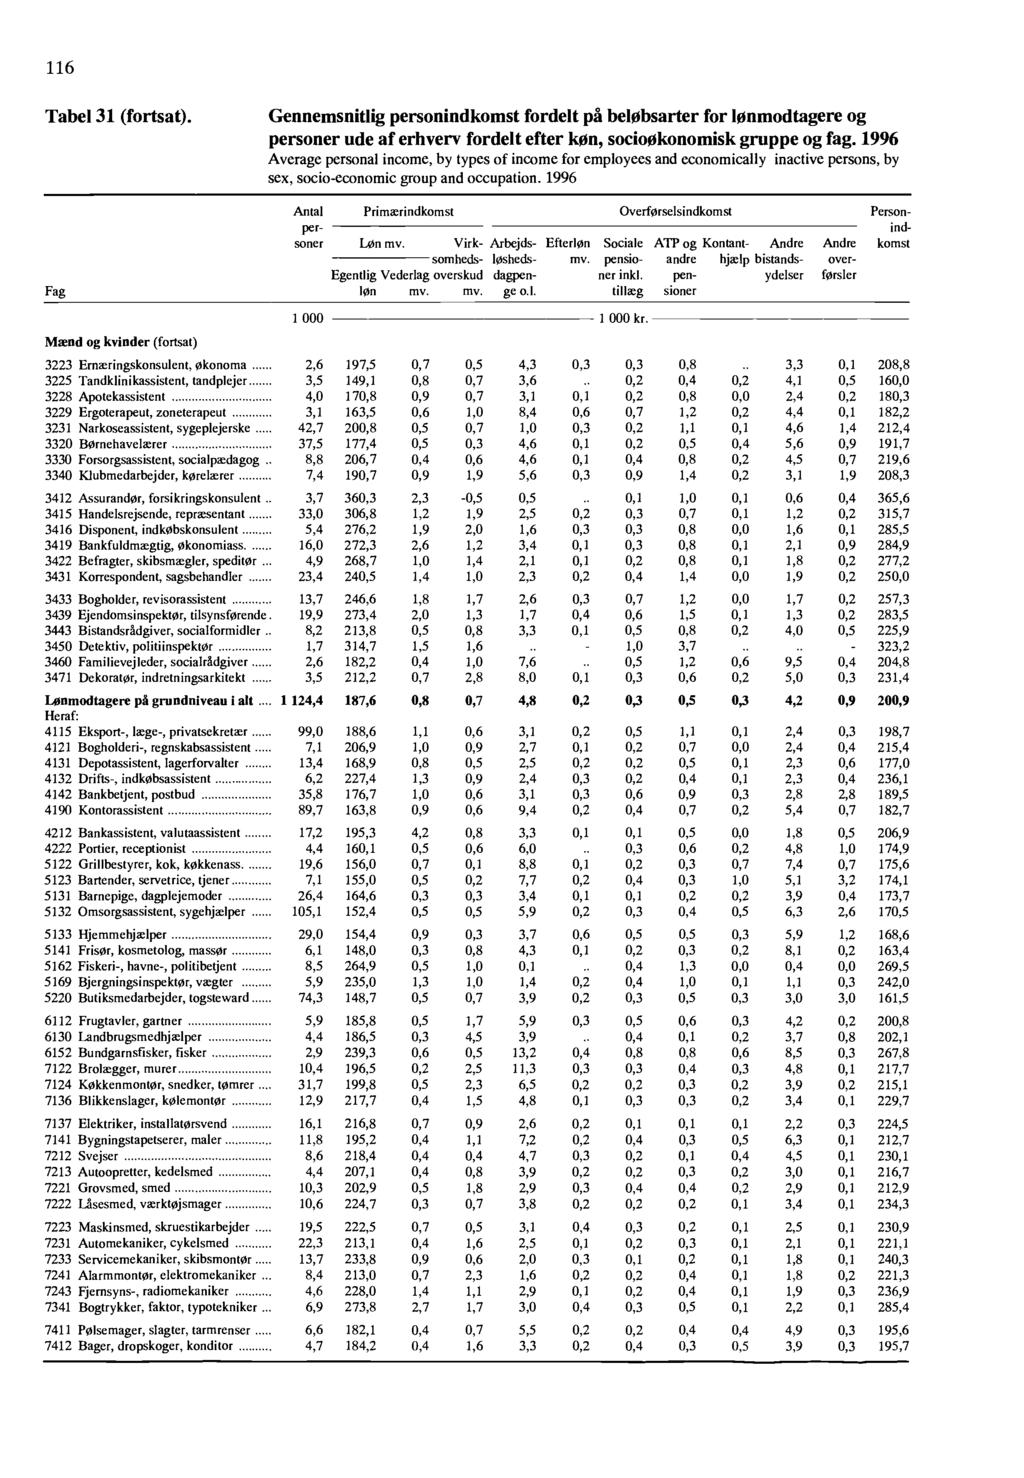 116 Tabel 31 (fortsat) Fag Gennemsnitlig personindkomst fordelt p t bell bsarter for lonmodtagere og personer ude of erhvery fordelt efter kon, sociookonomisk gruppe og fag 1996 Average personal